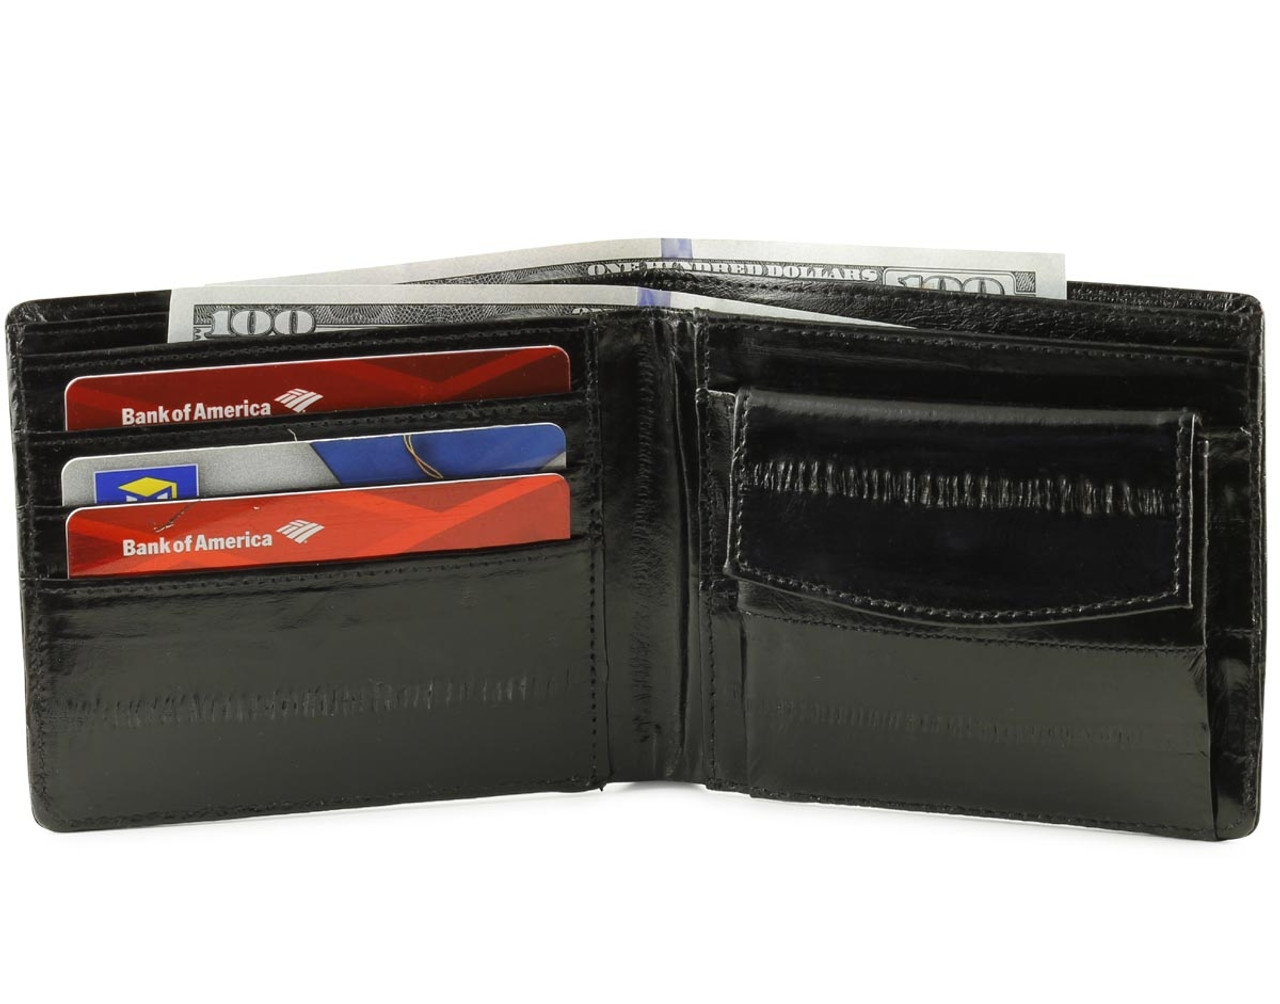 Eel Skin Mens Wallet with Coin Pocket | WalletGear